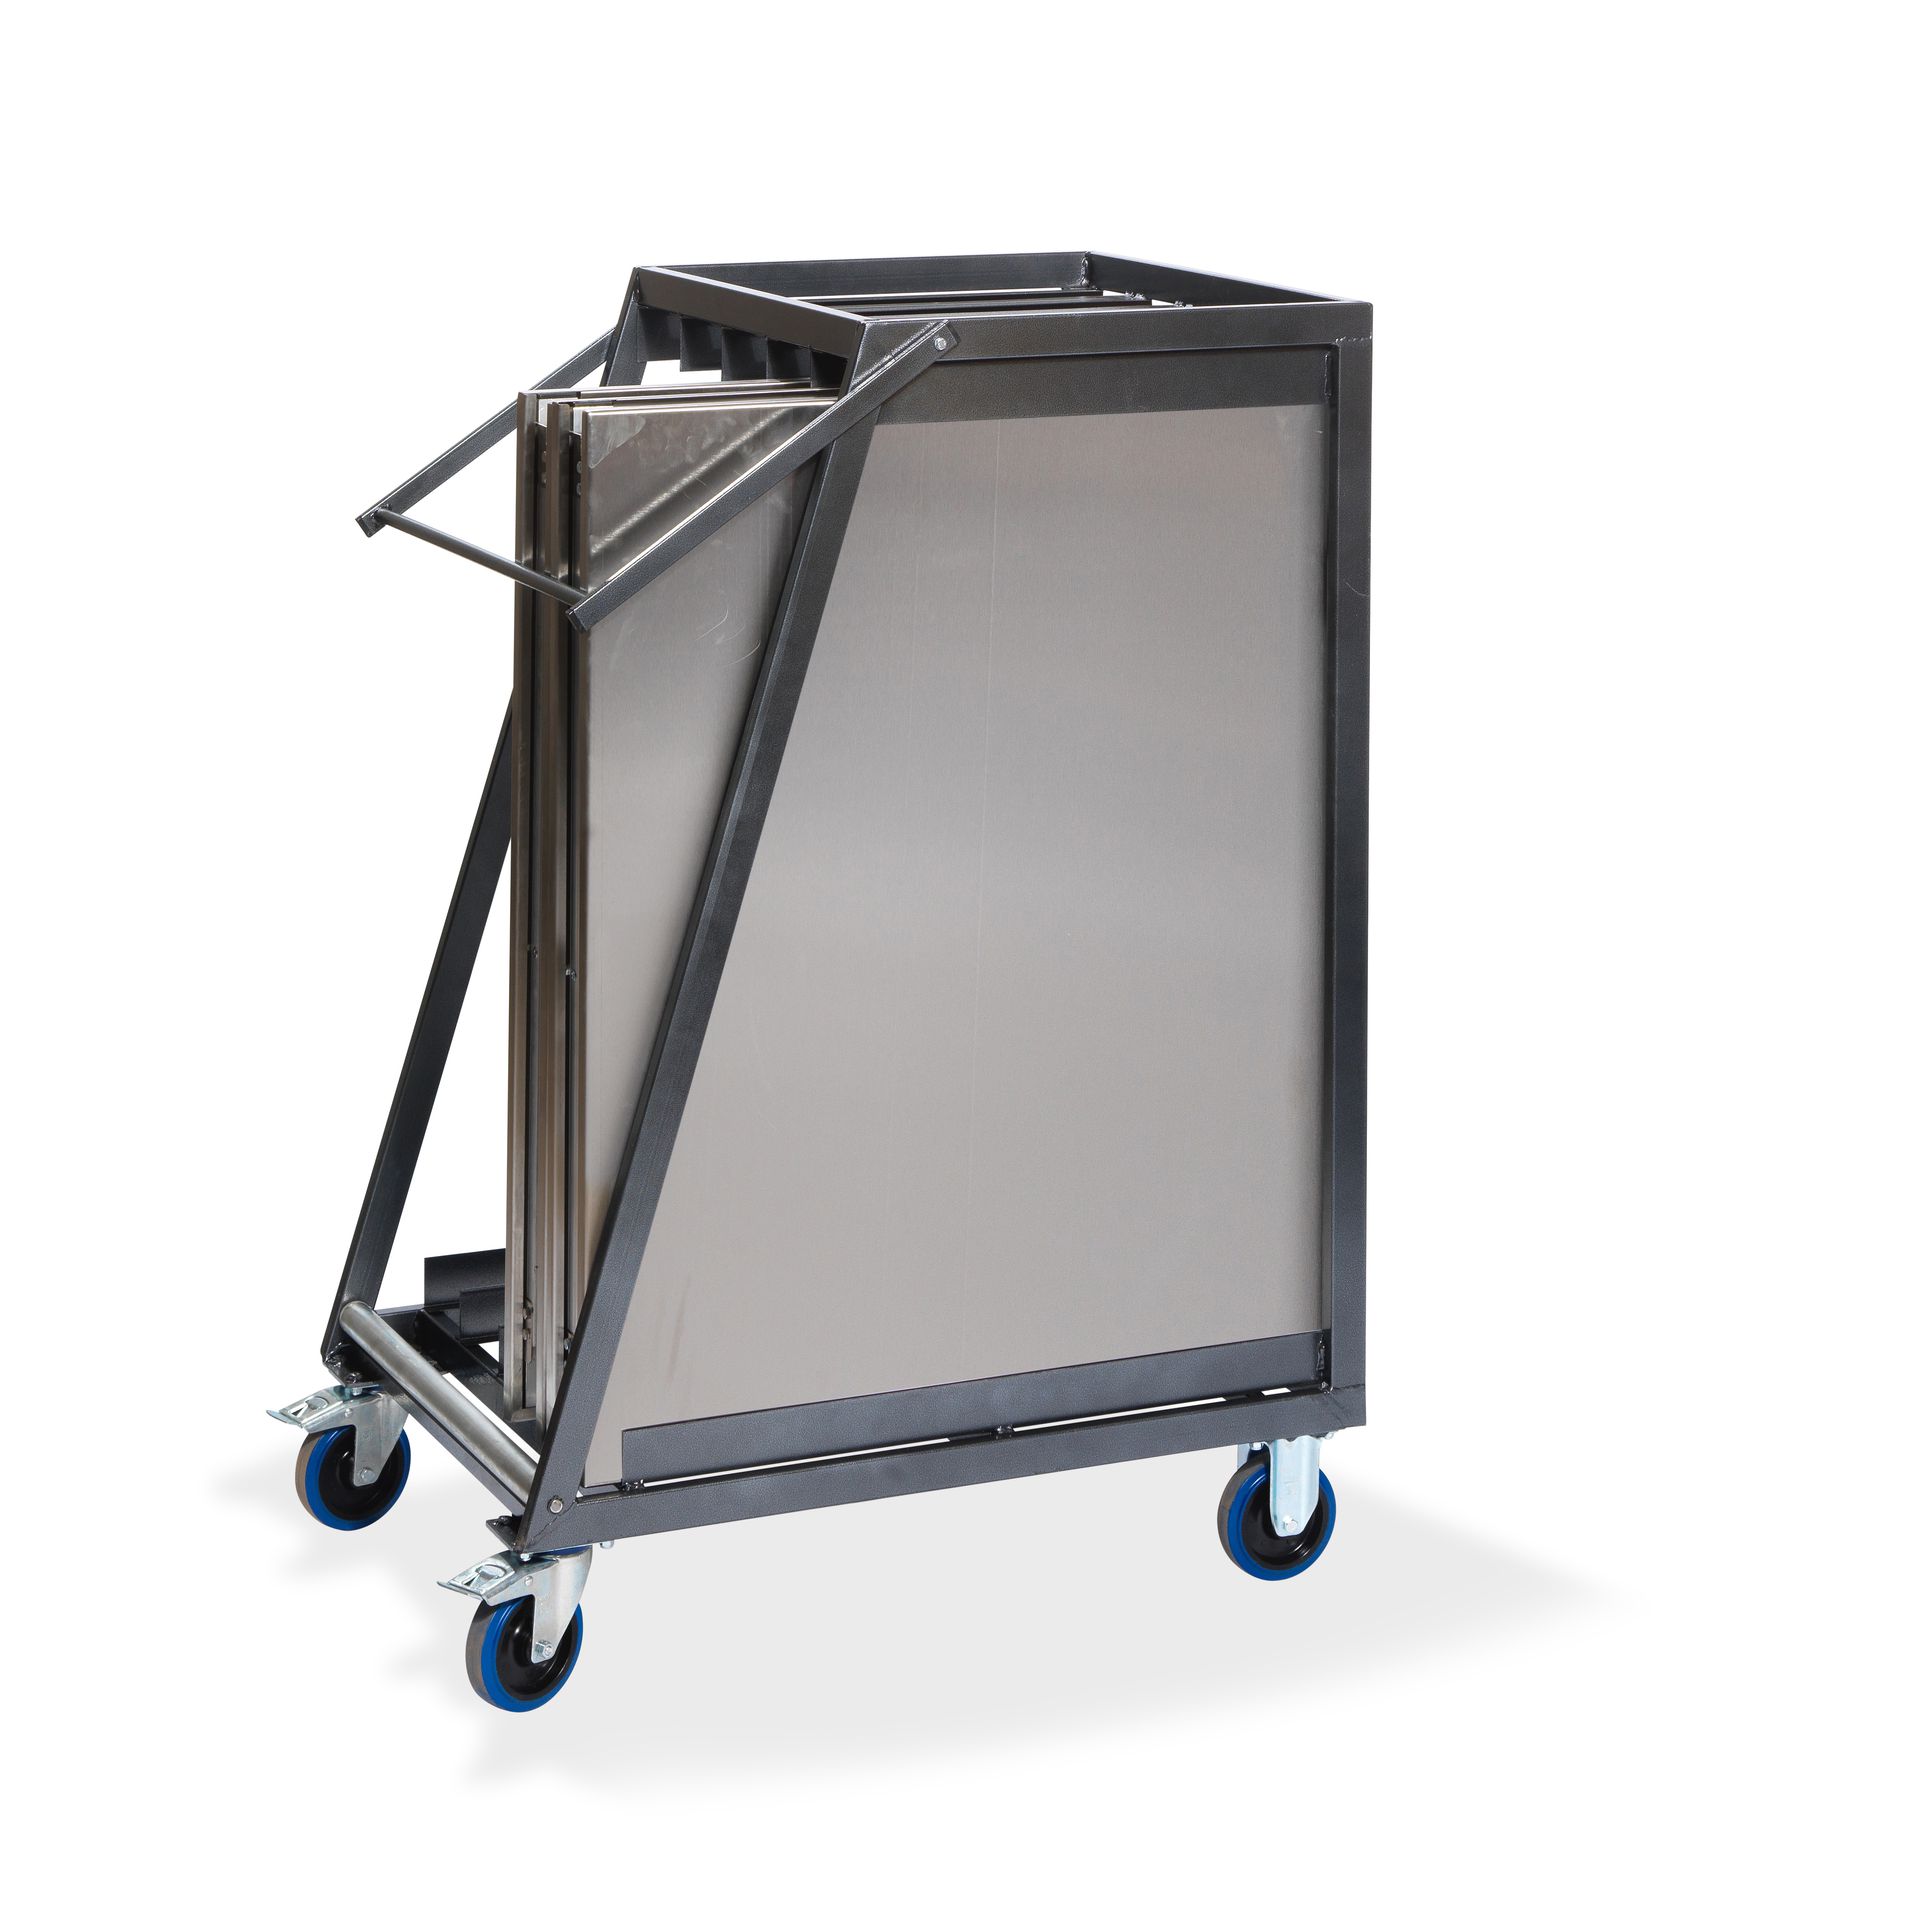 Chariot de transport pour 5 tables de travail pliantes en inox, 88x65x113cm (BxTxH), T91200